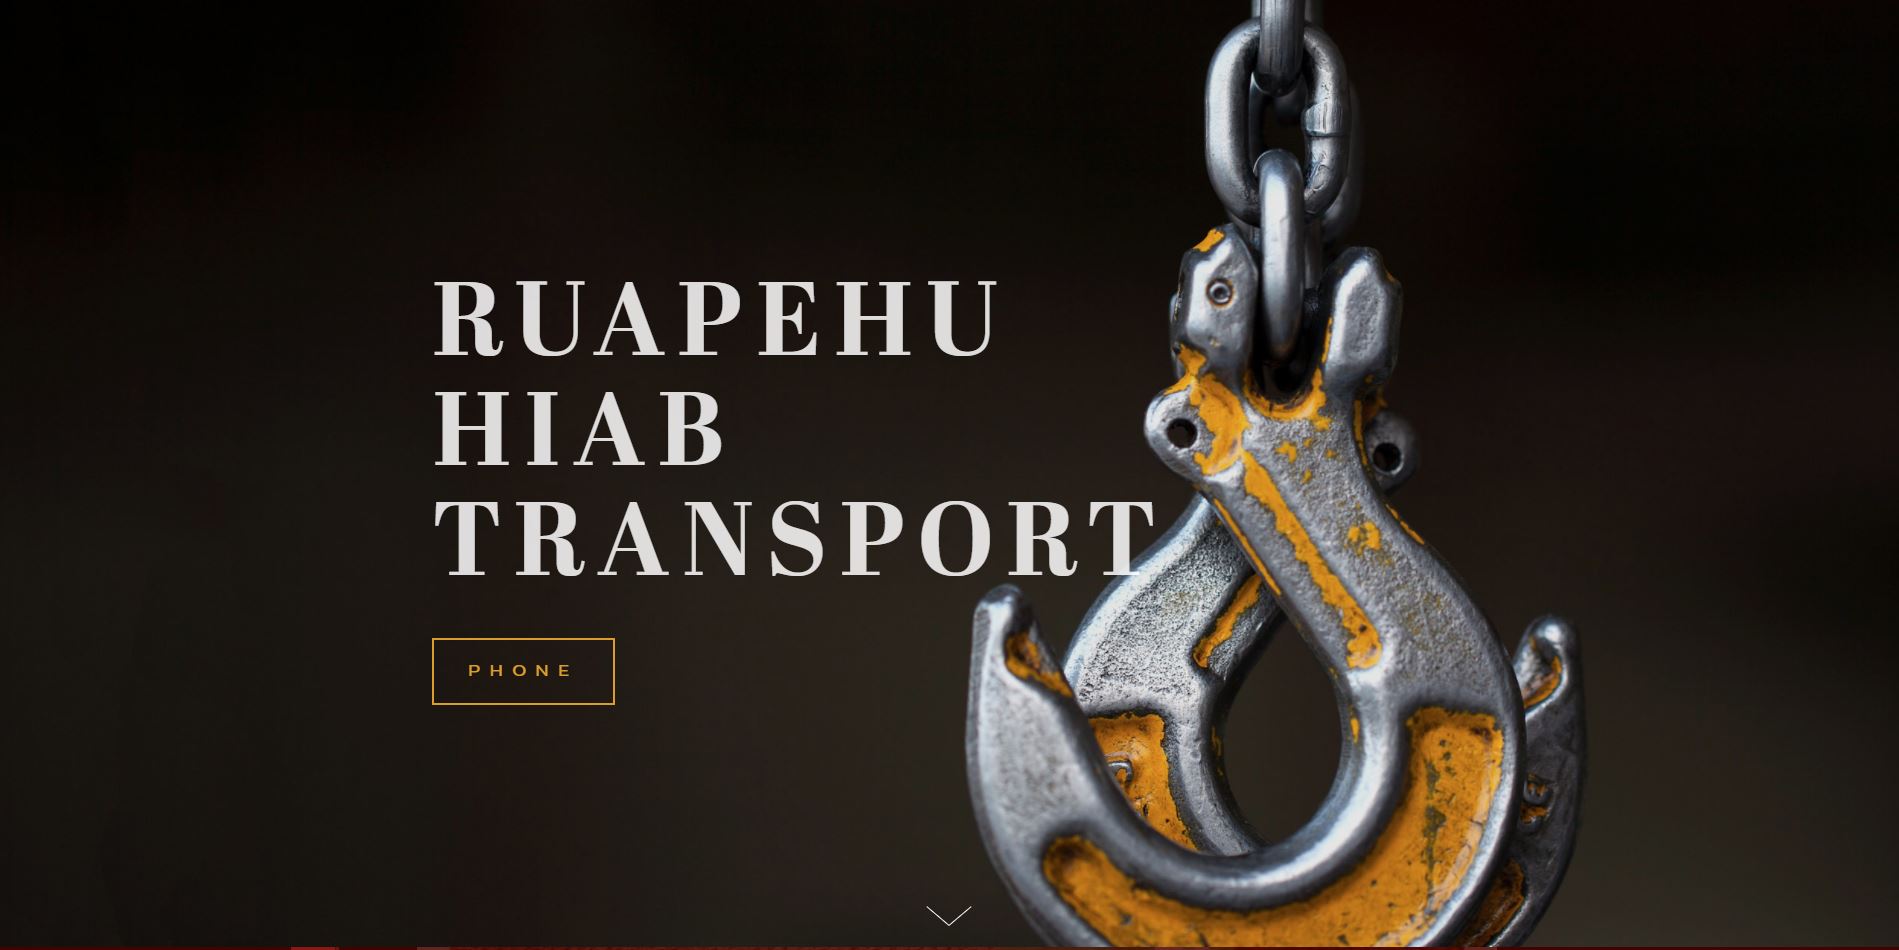 Ruapehu Hiab Transport Ltd